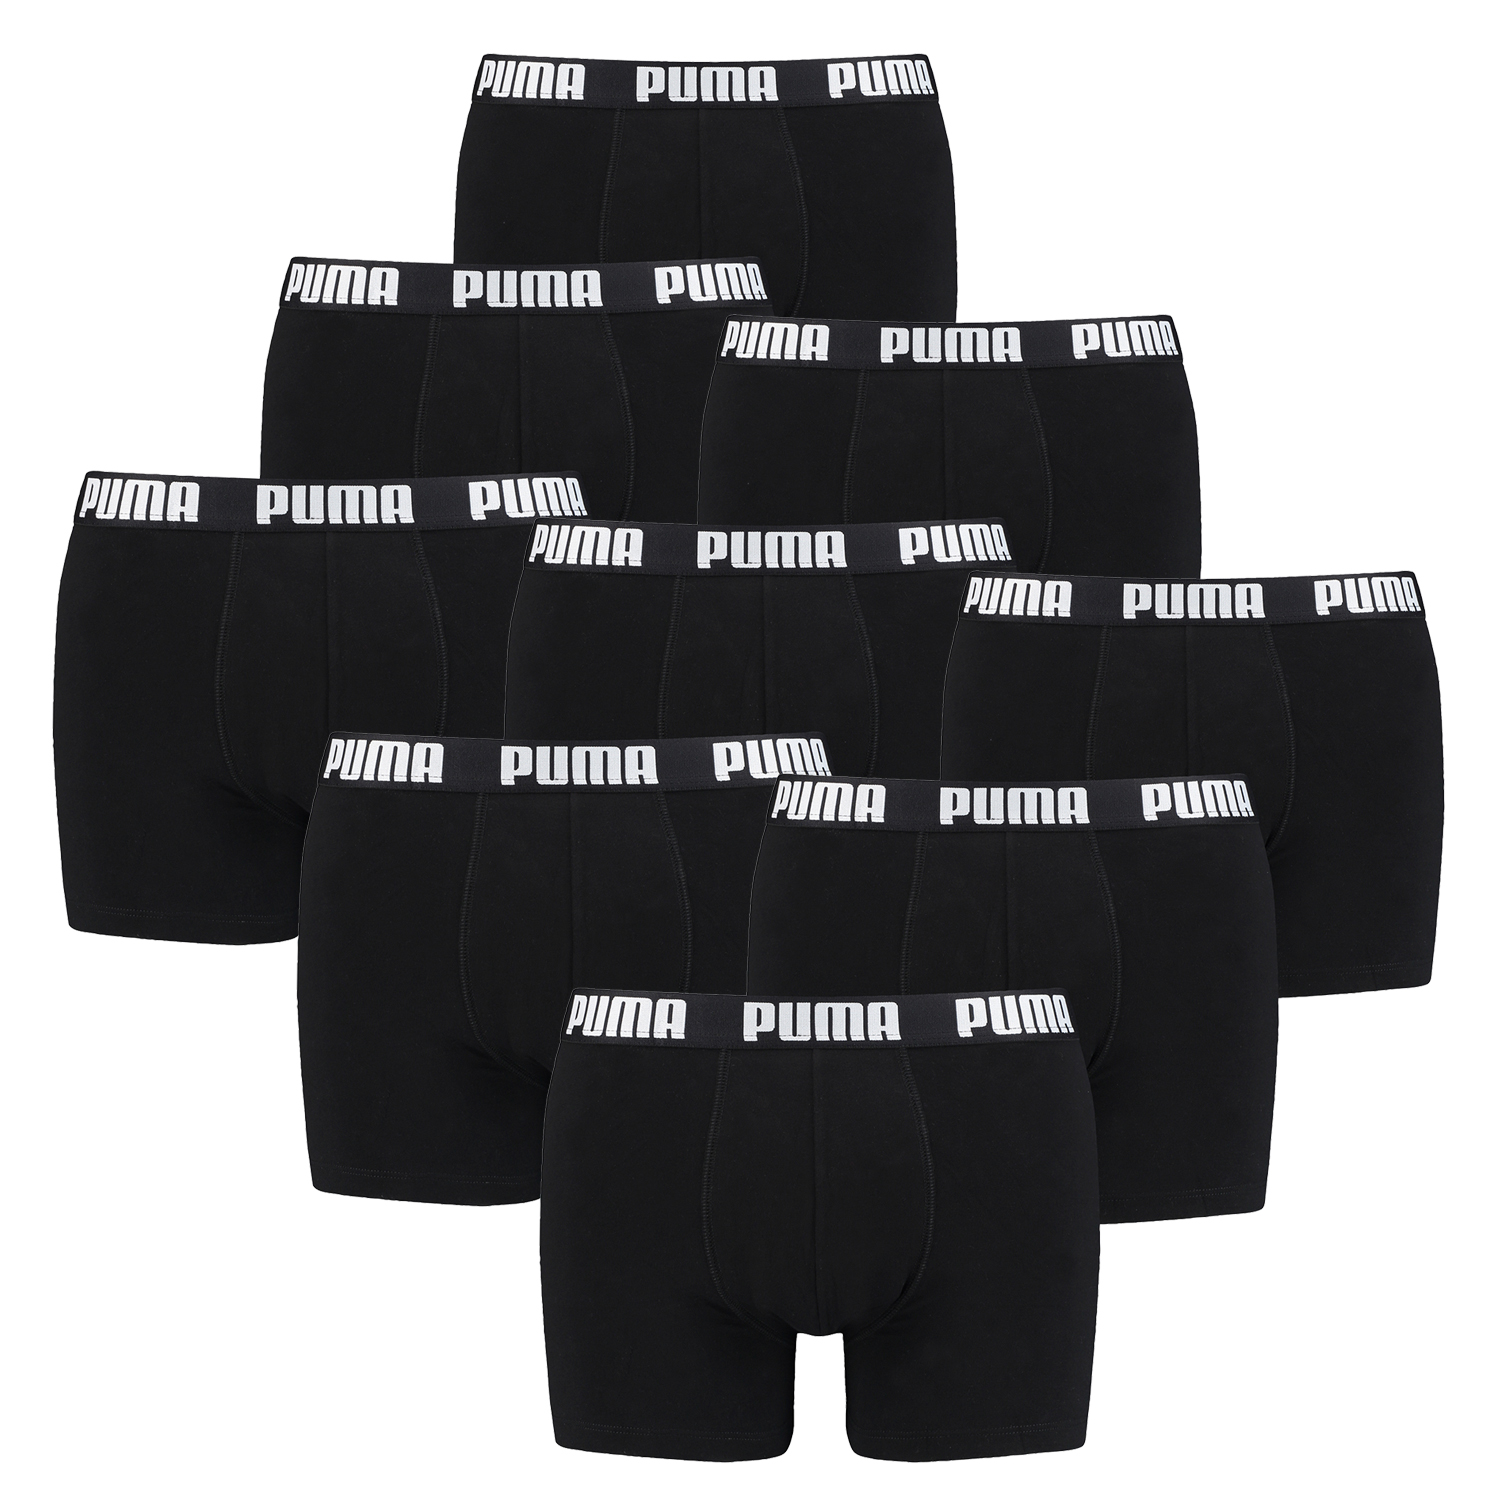 Puma Boxer Briefs Boxershorts Men Herren Everyday Unterhose Pant Unterwäsche 9 er Pack 